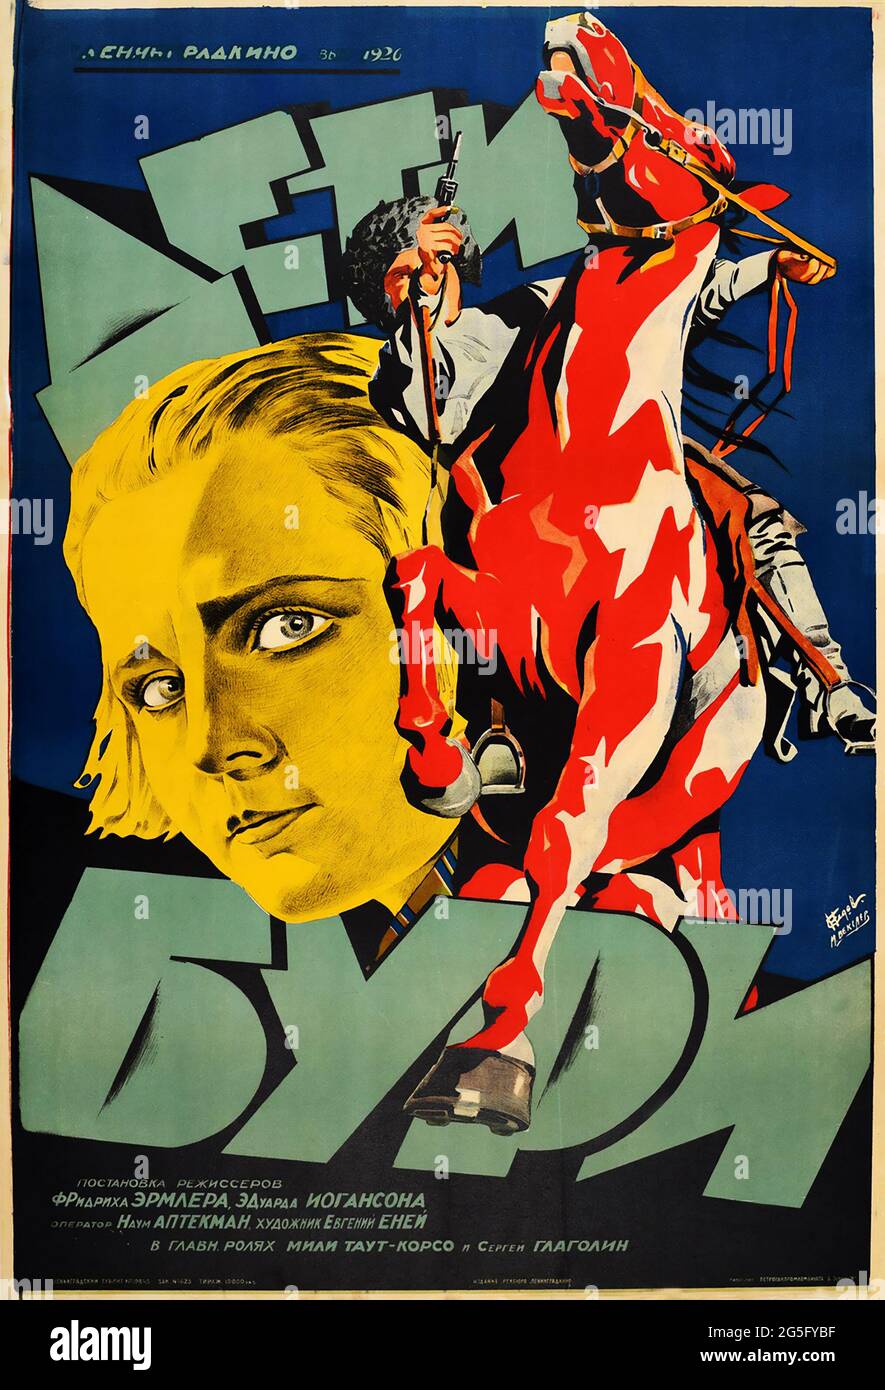 Poster d'epoca – Bambini della tempesta – Film sovietico Constructivismo russo, 1926 Foto Stock